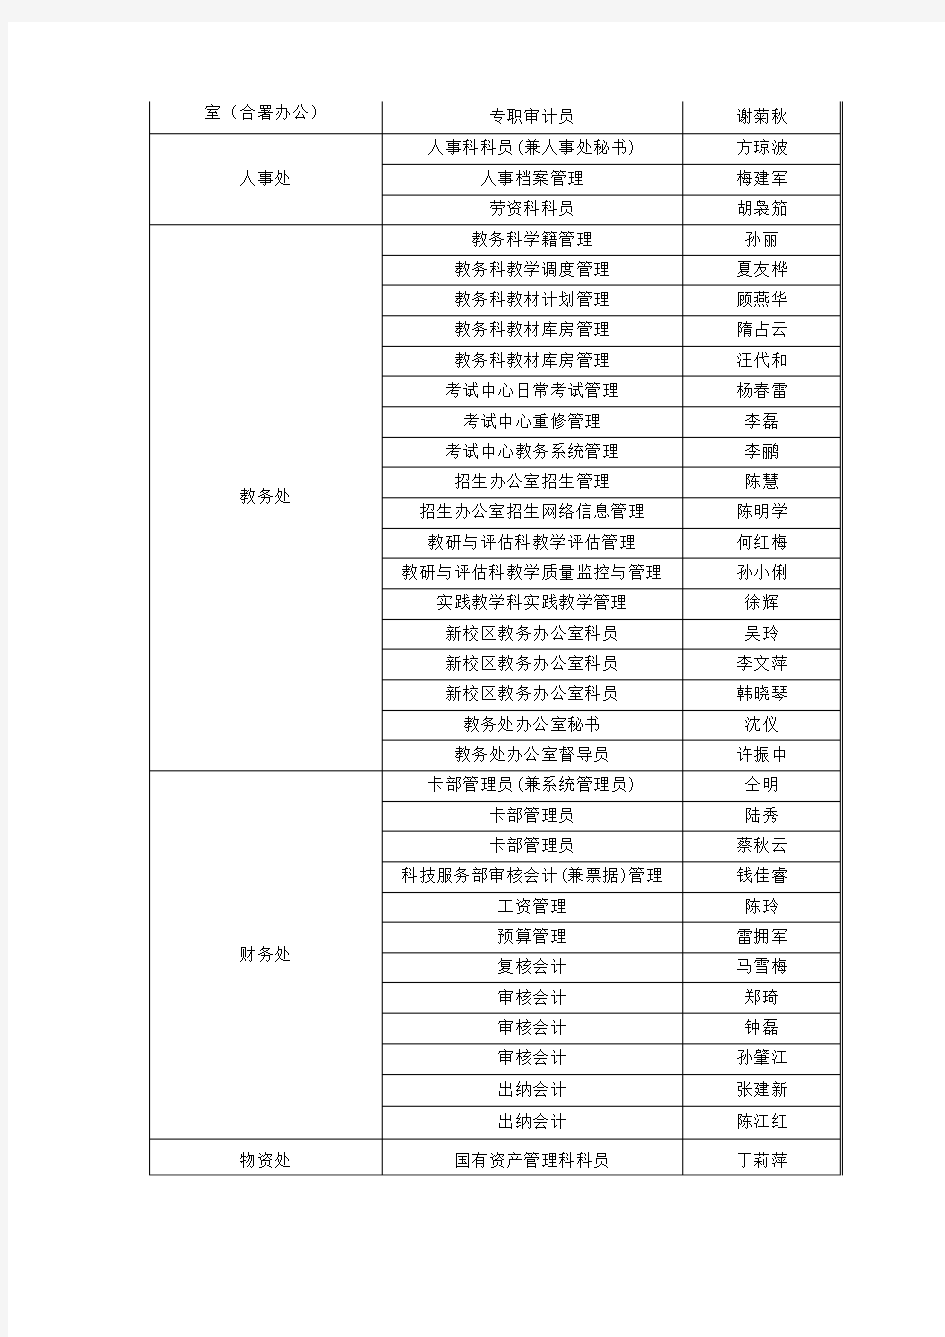 南京工程学院科级以下党政管理人员岗位聘任情况一览表